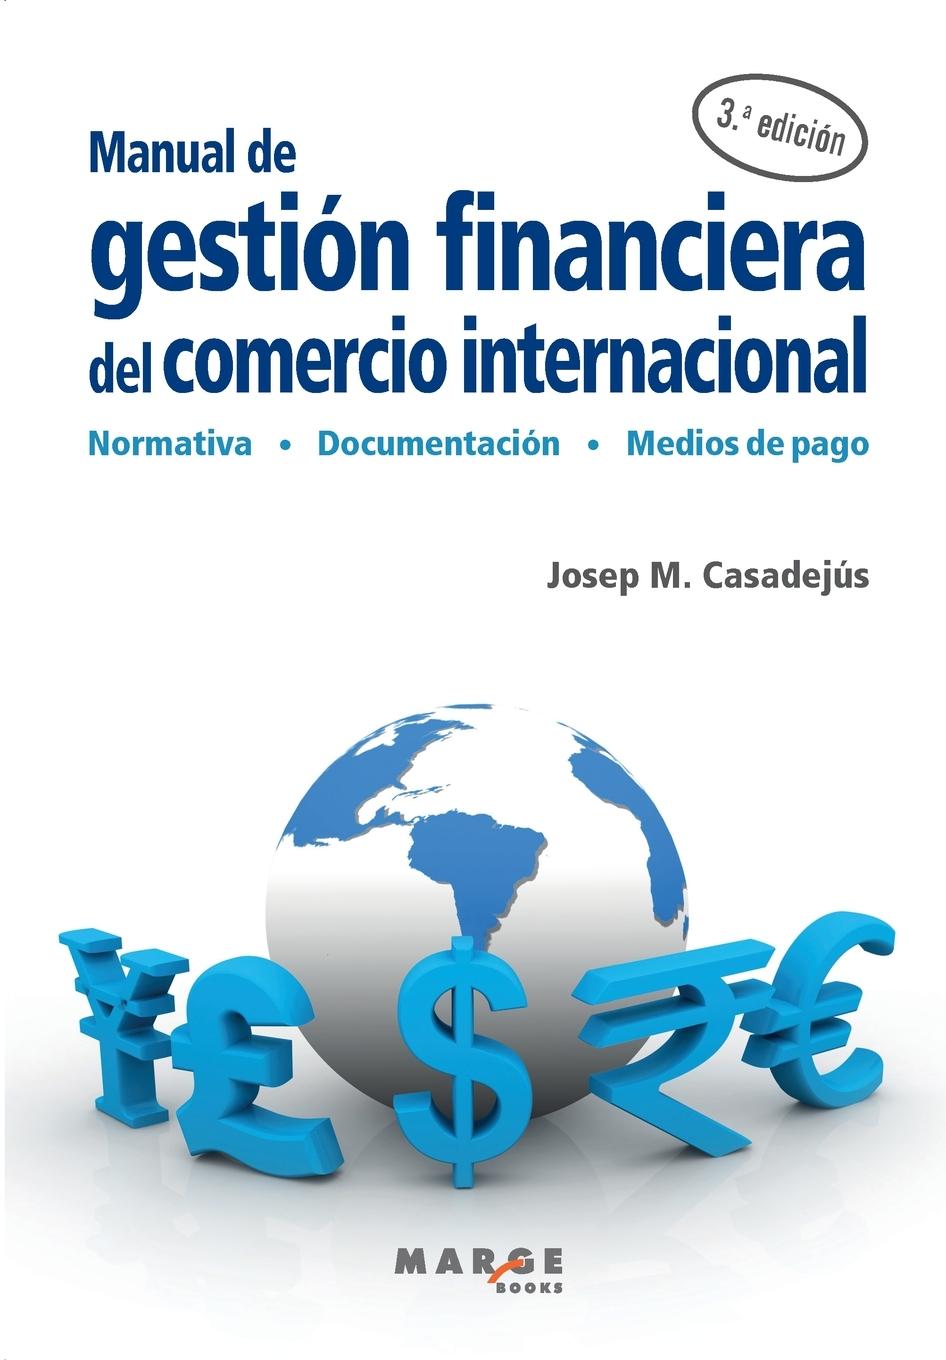 Kniha MANUAL DE GESTION FINANCIERA DEL COMERCIO INTERNACIONAL JOSEP M CASADEJUS